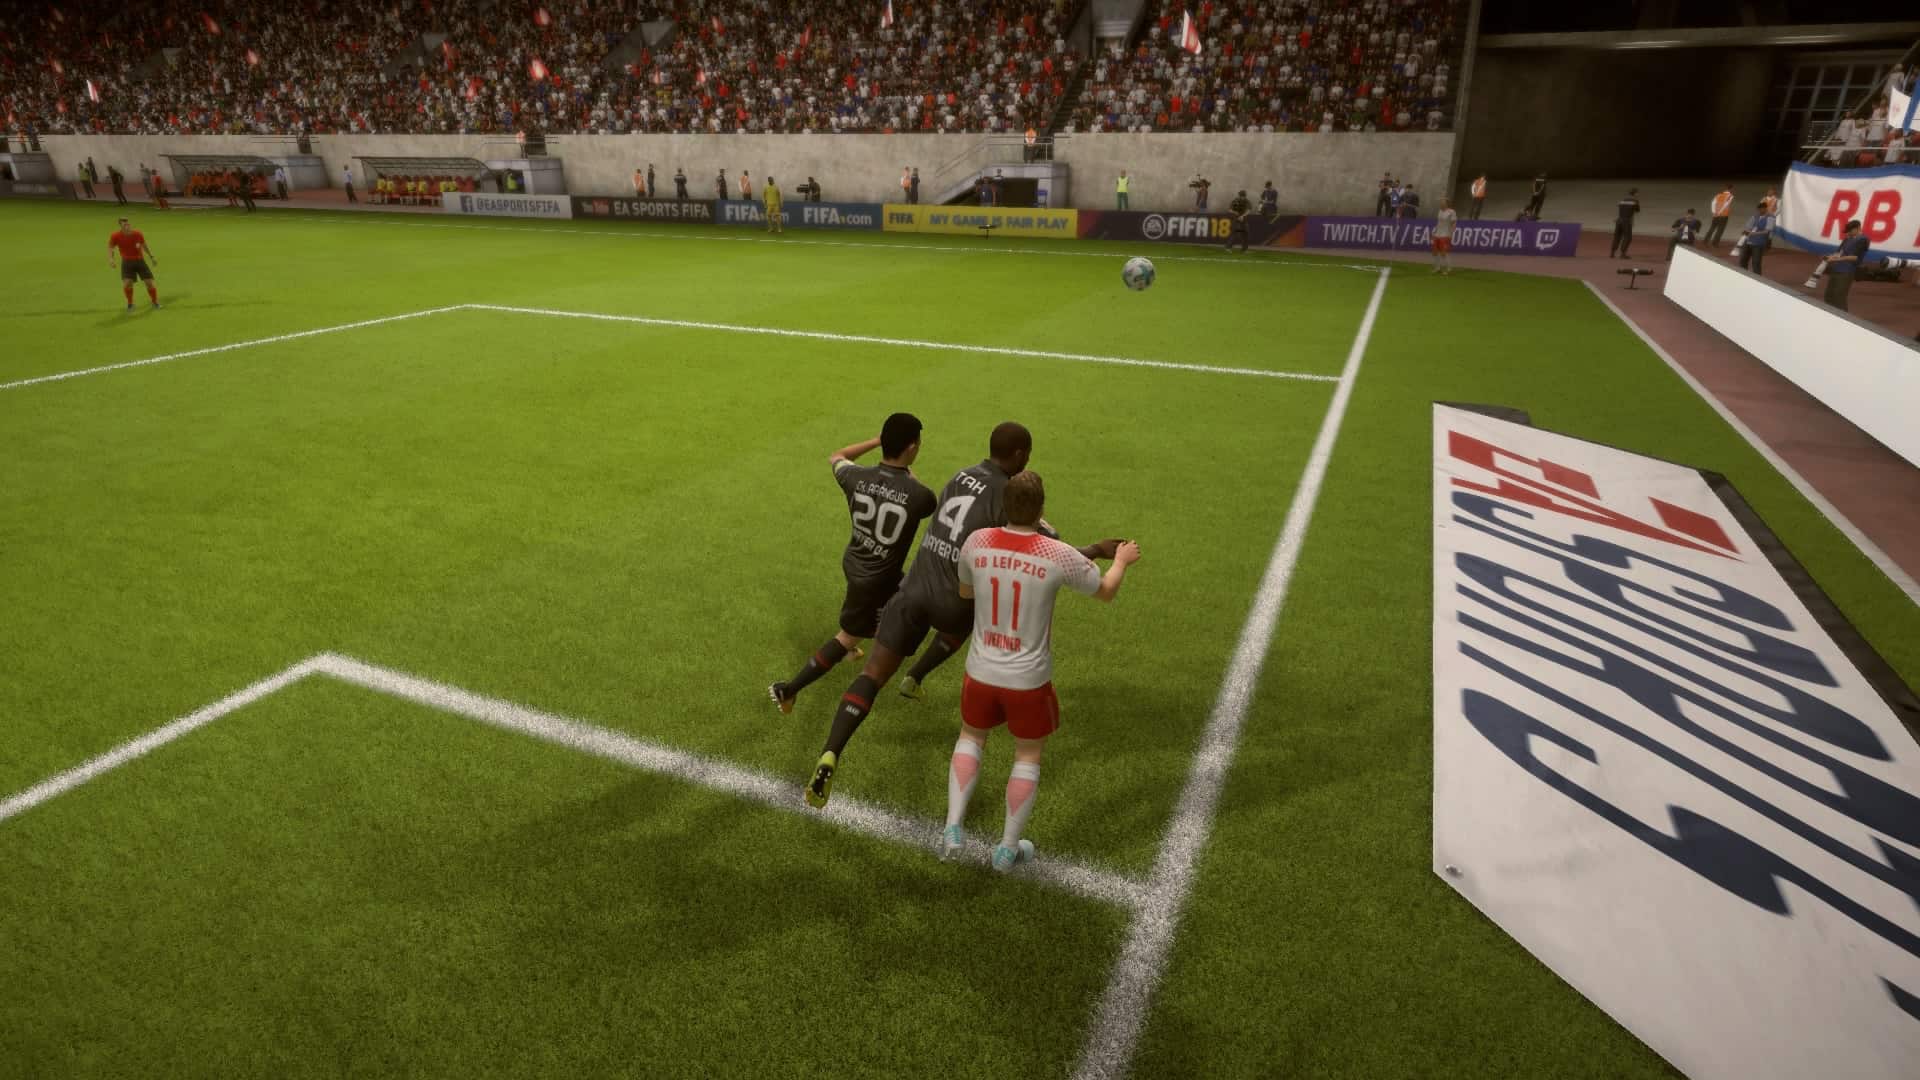 Jonathan Tah shows his strength in FIFA 18